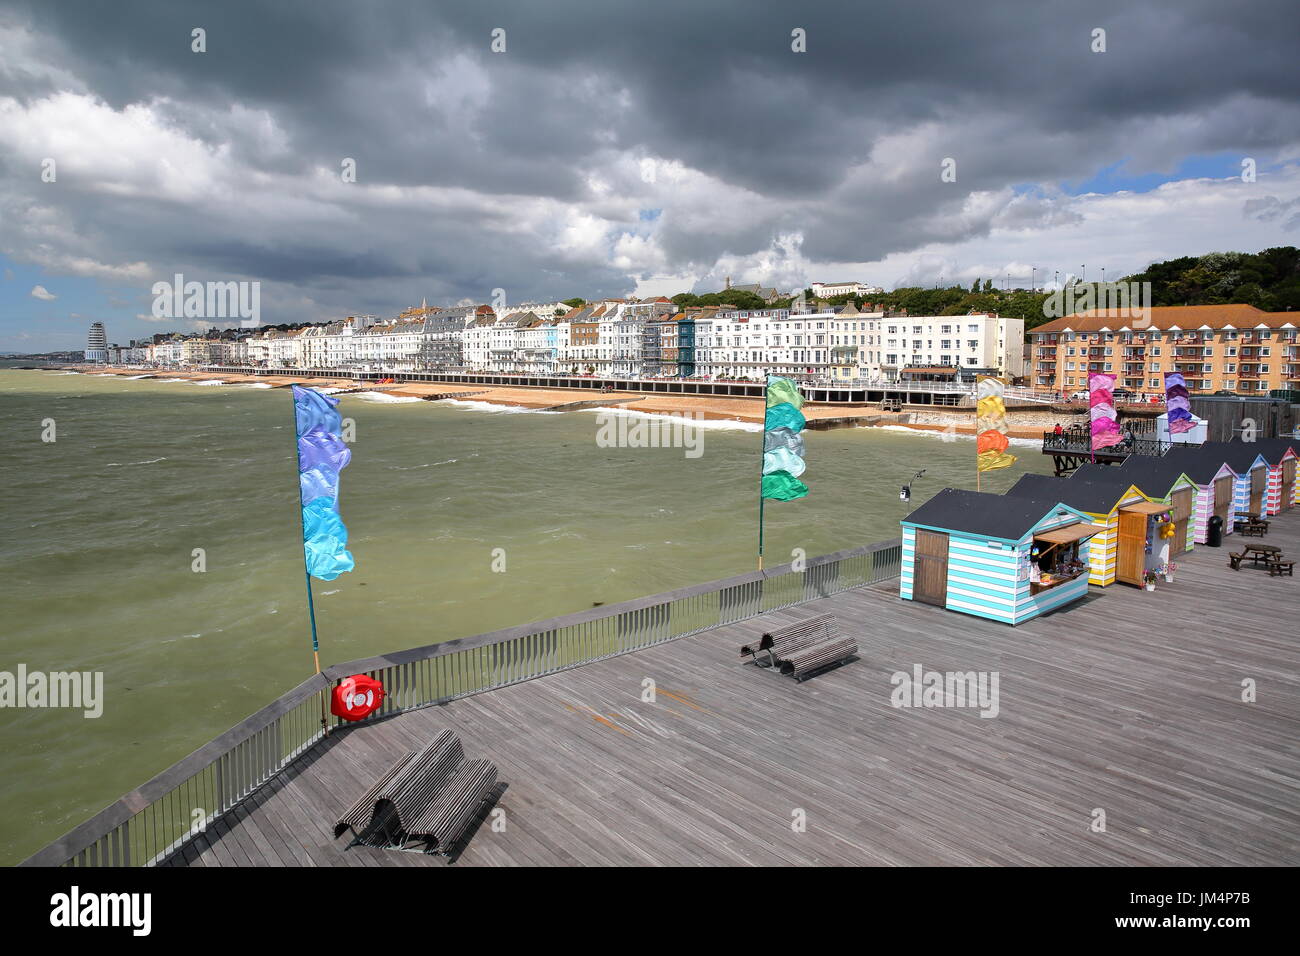 HASTINGS, Regno Unito - Luglio 23, 2017: vista del mare dal molo (ricostruita e aperta al pubblico nel 2016) con capanne colorate in primo piano e un beaut Foto Stock